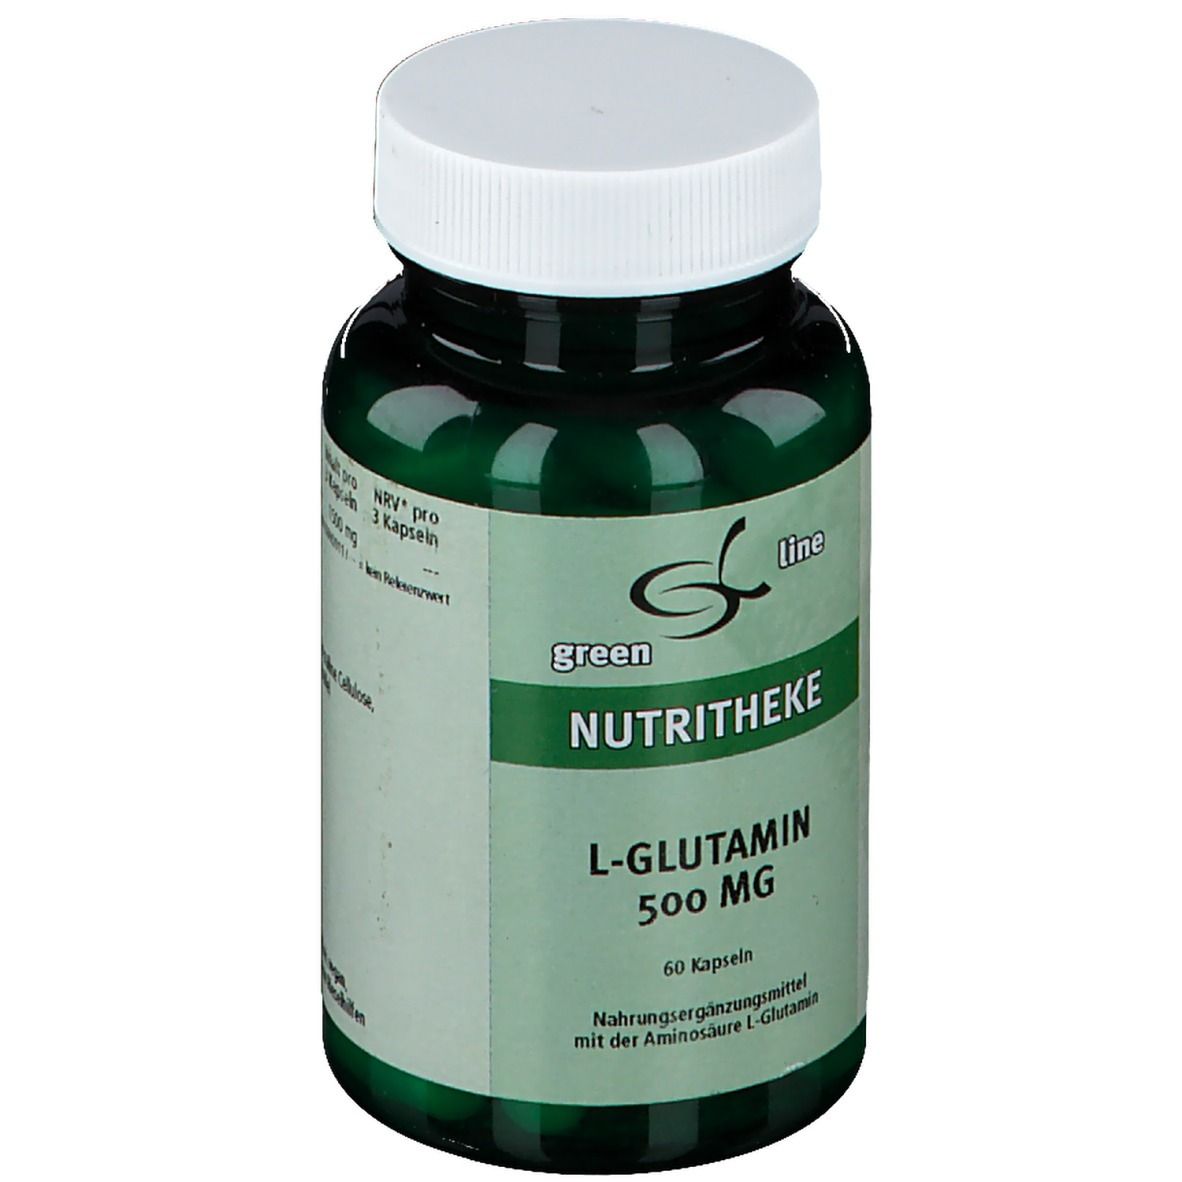 green Line L-Glutamin 500 mg